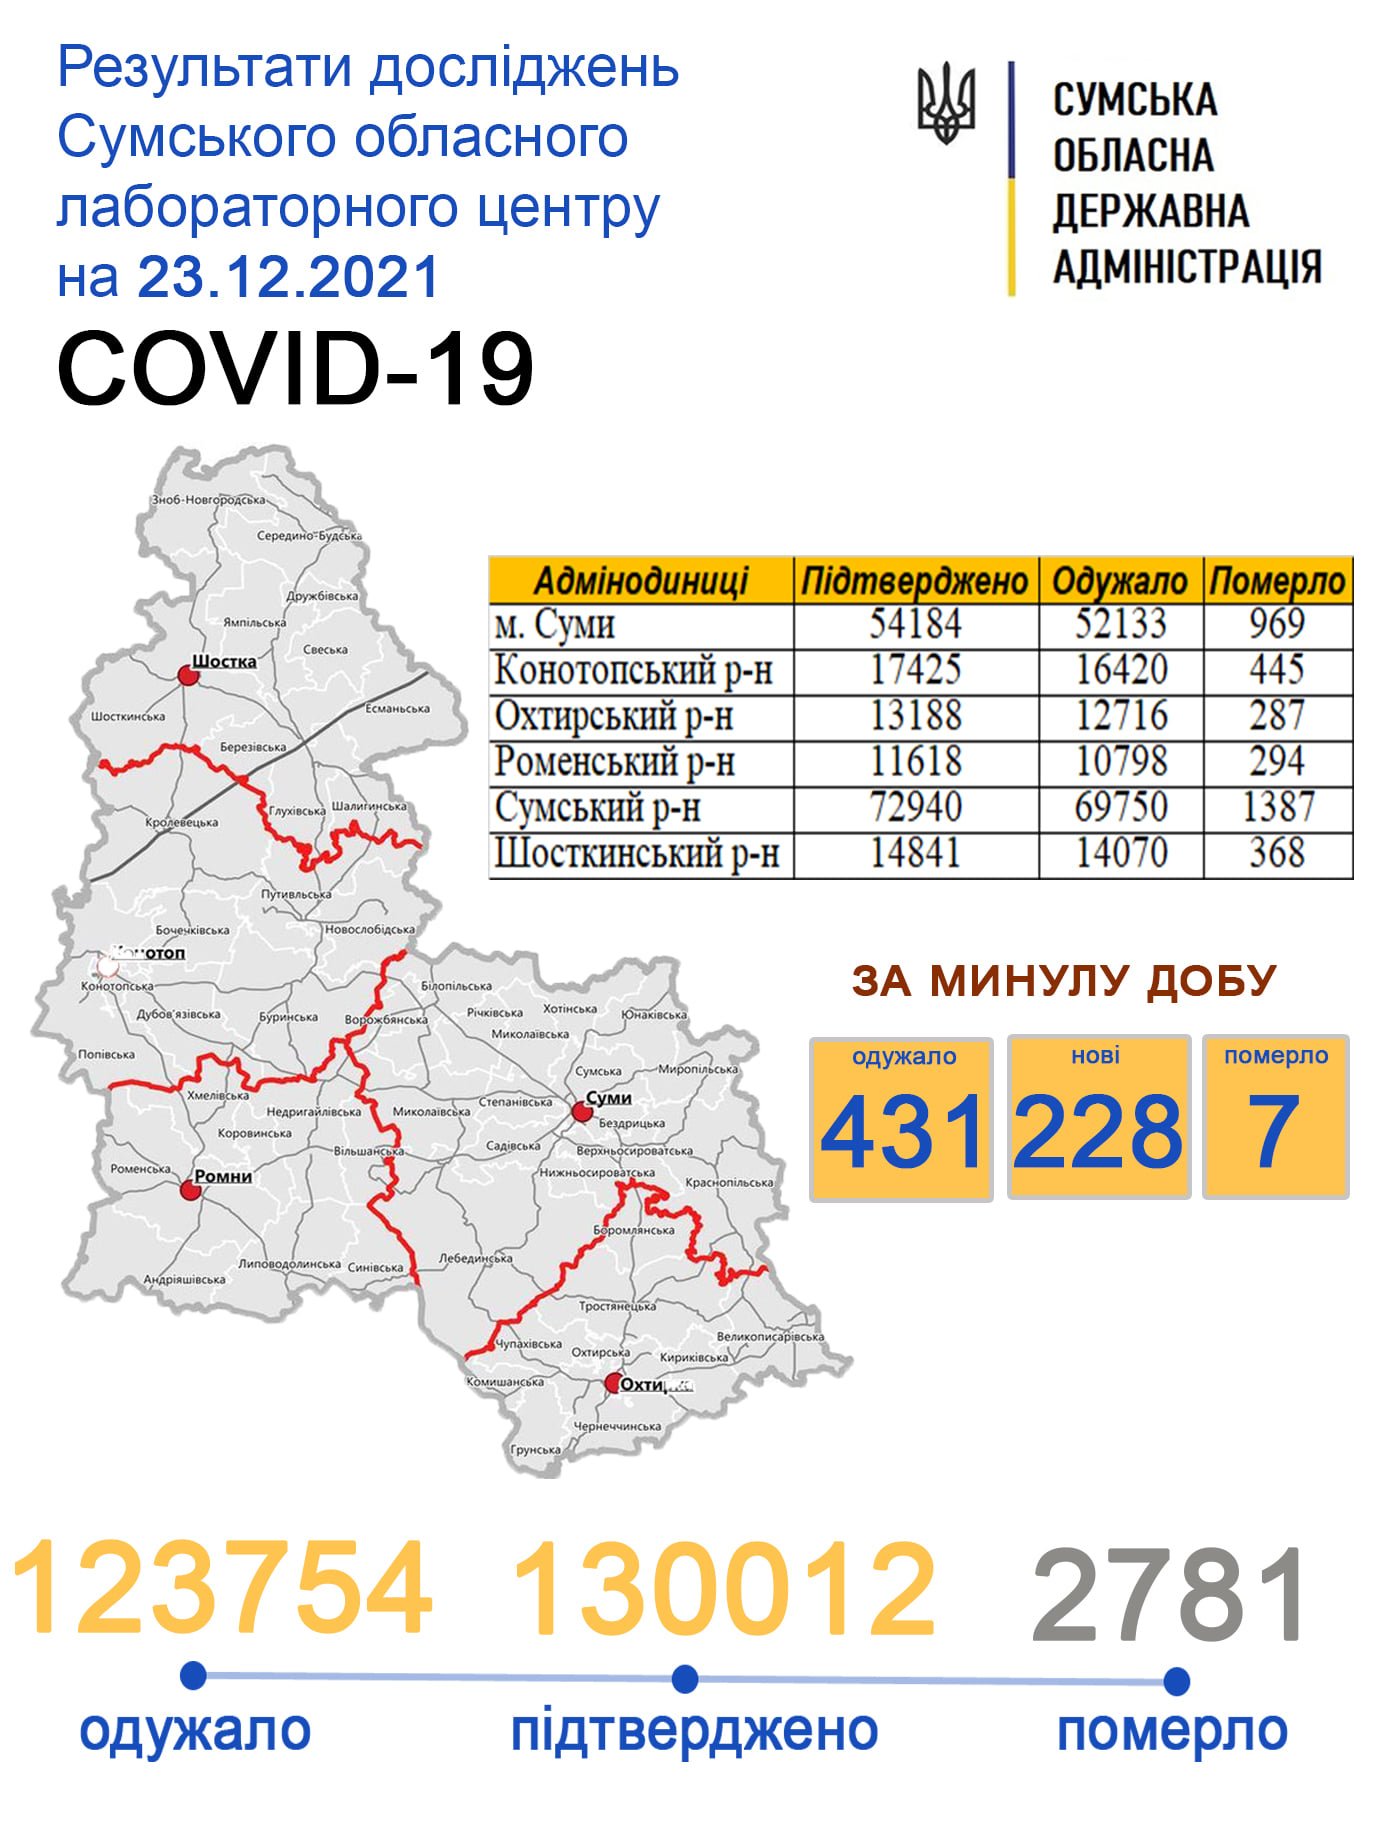    covid-19  228   